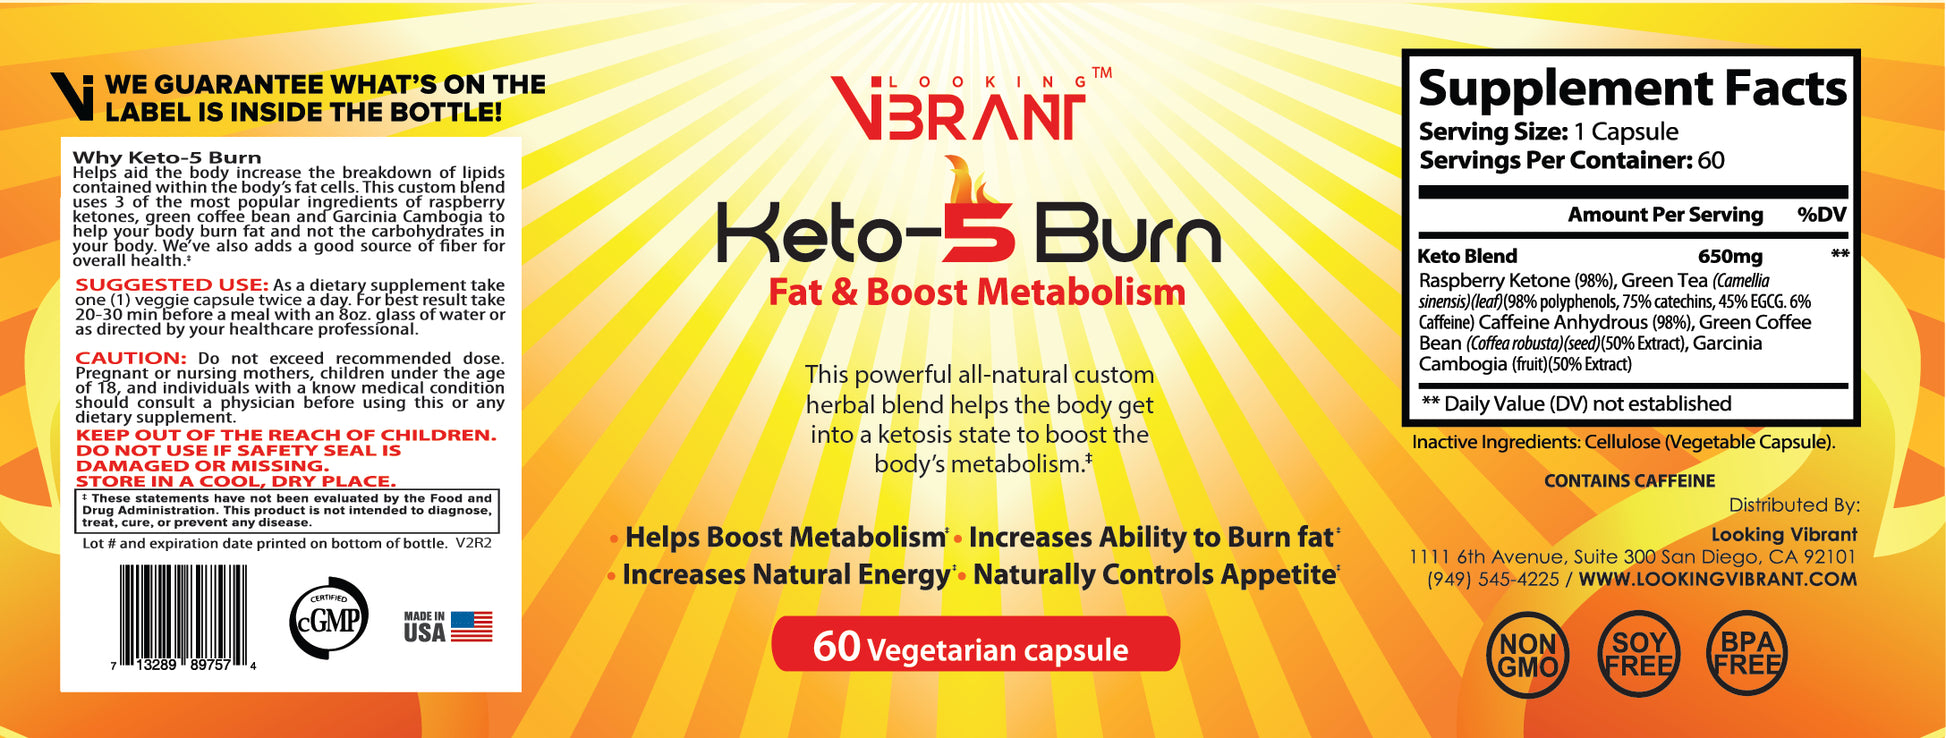 Keto-5 Burn - lookingvibrantcom